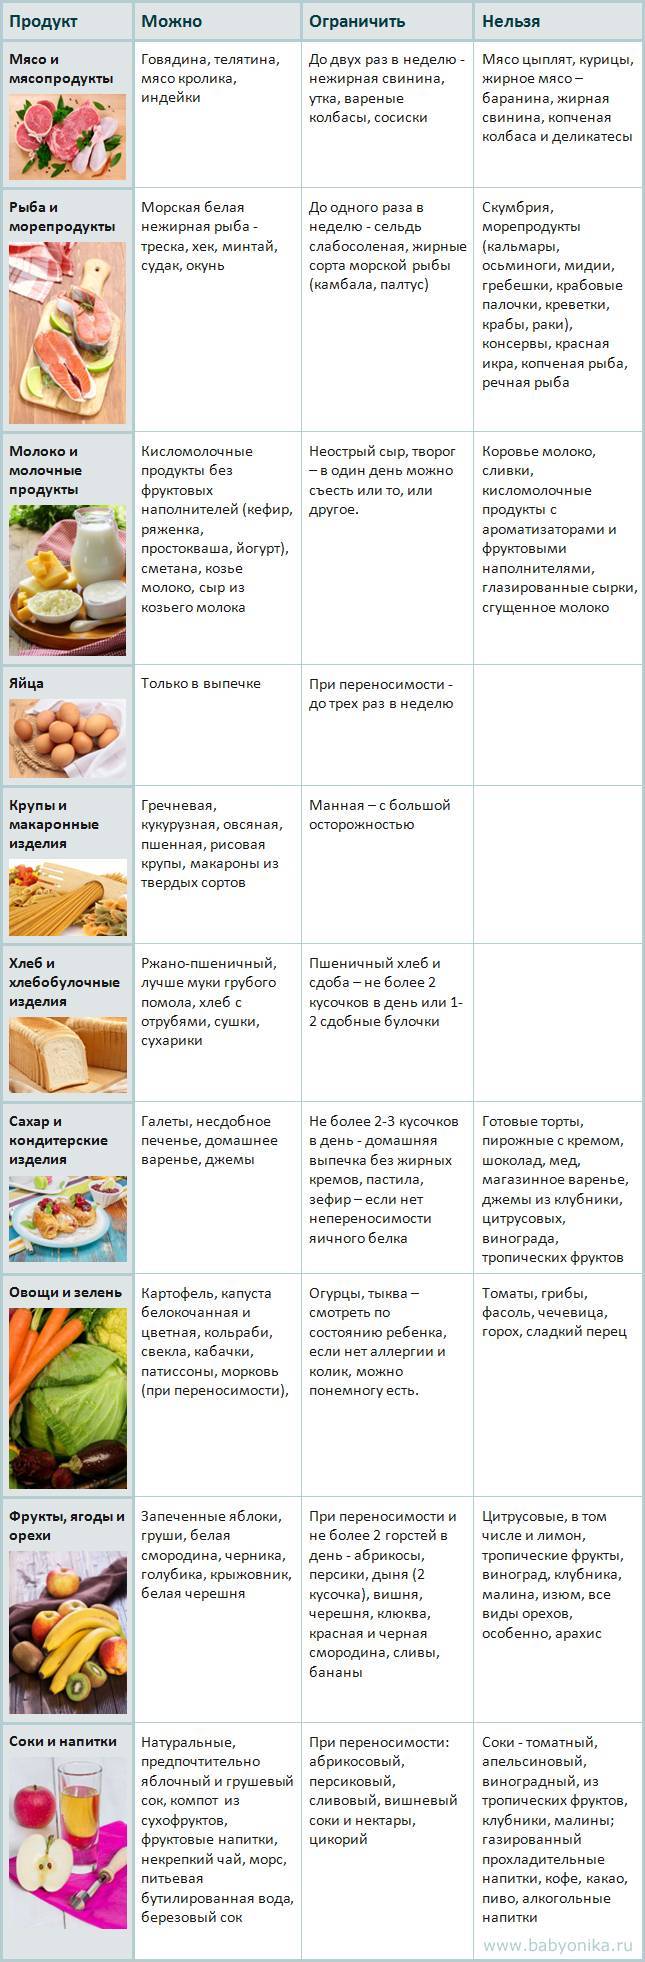 Список разрешенных и запрещенных продуктов при грудном вскармливании